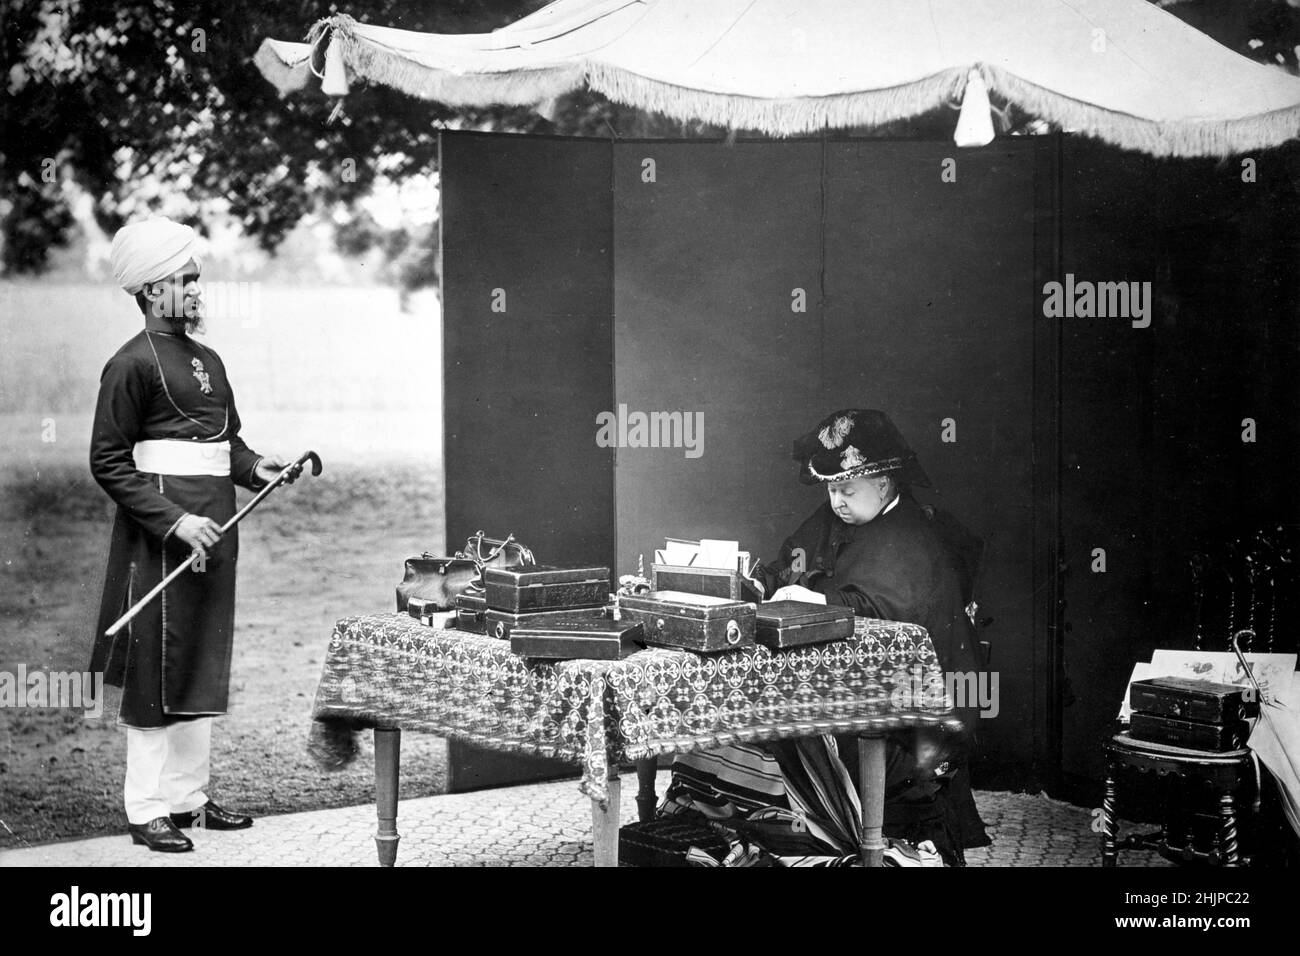 La reine d'Angleterre Victoria (1819-1901) et son valet et confient indien Mohammed Abdul Karim en 1893 (1863-1909) (Reine d'Angleterre Victoria et Abdul Karim (le Munshi) son accompagnateur indien, 1893 ) Photographie Collection privee Banque D'Images